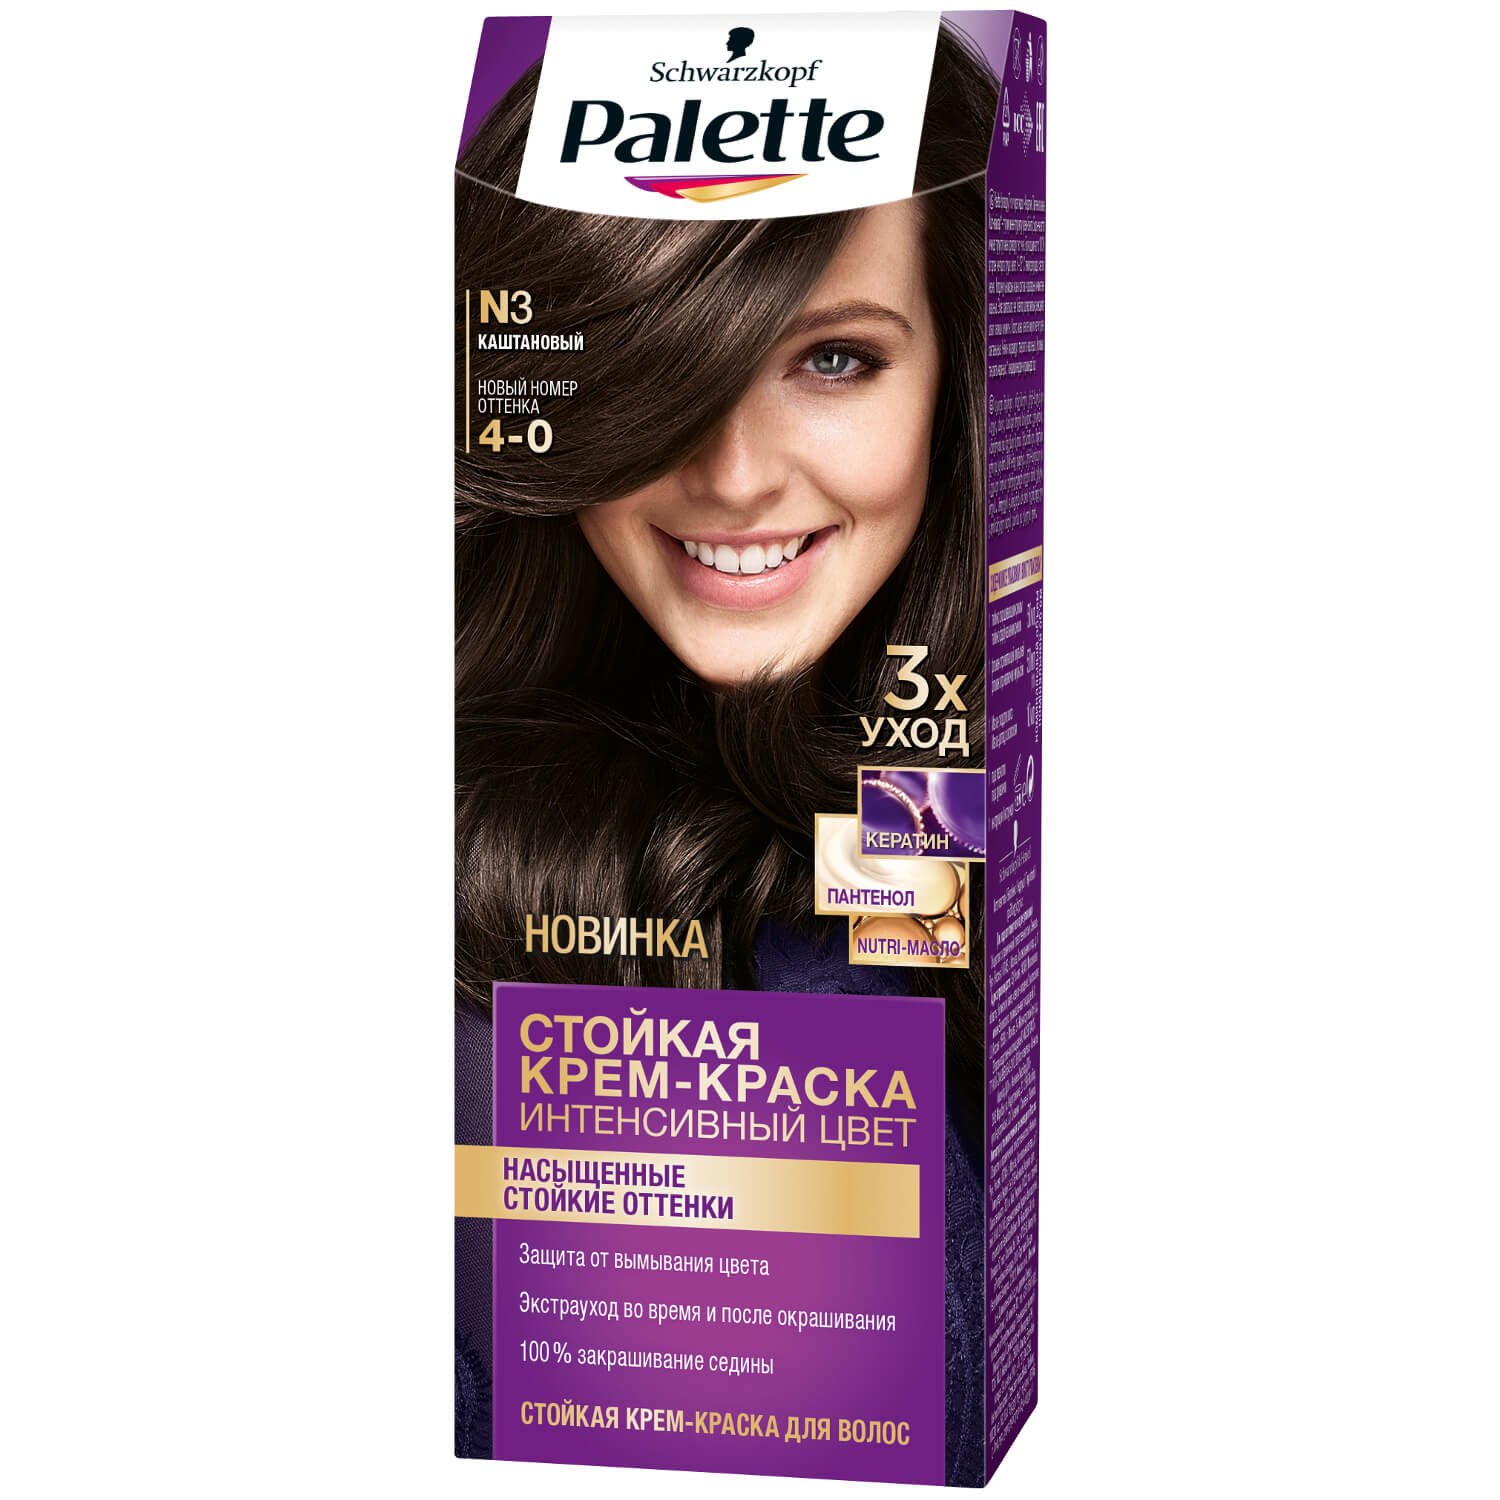 Palette ICC Краска для волос 4-0 (N3) Каштановый 110 мл